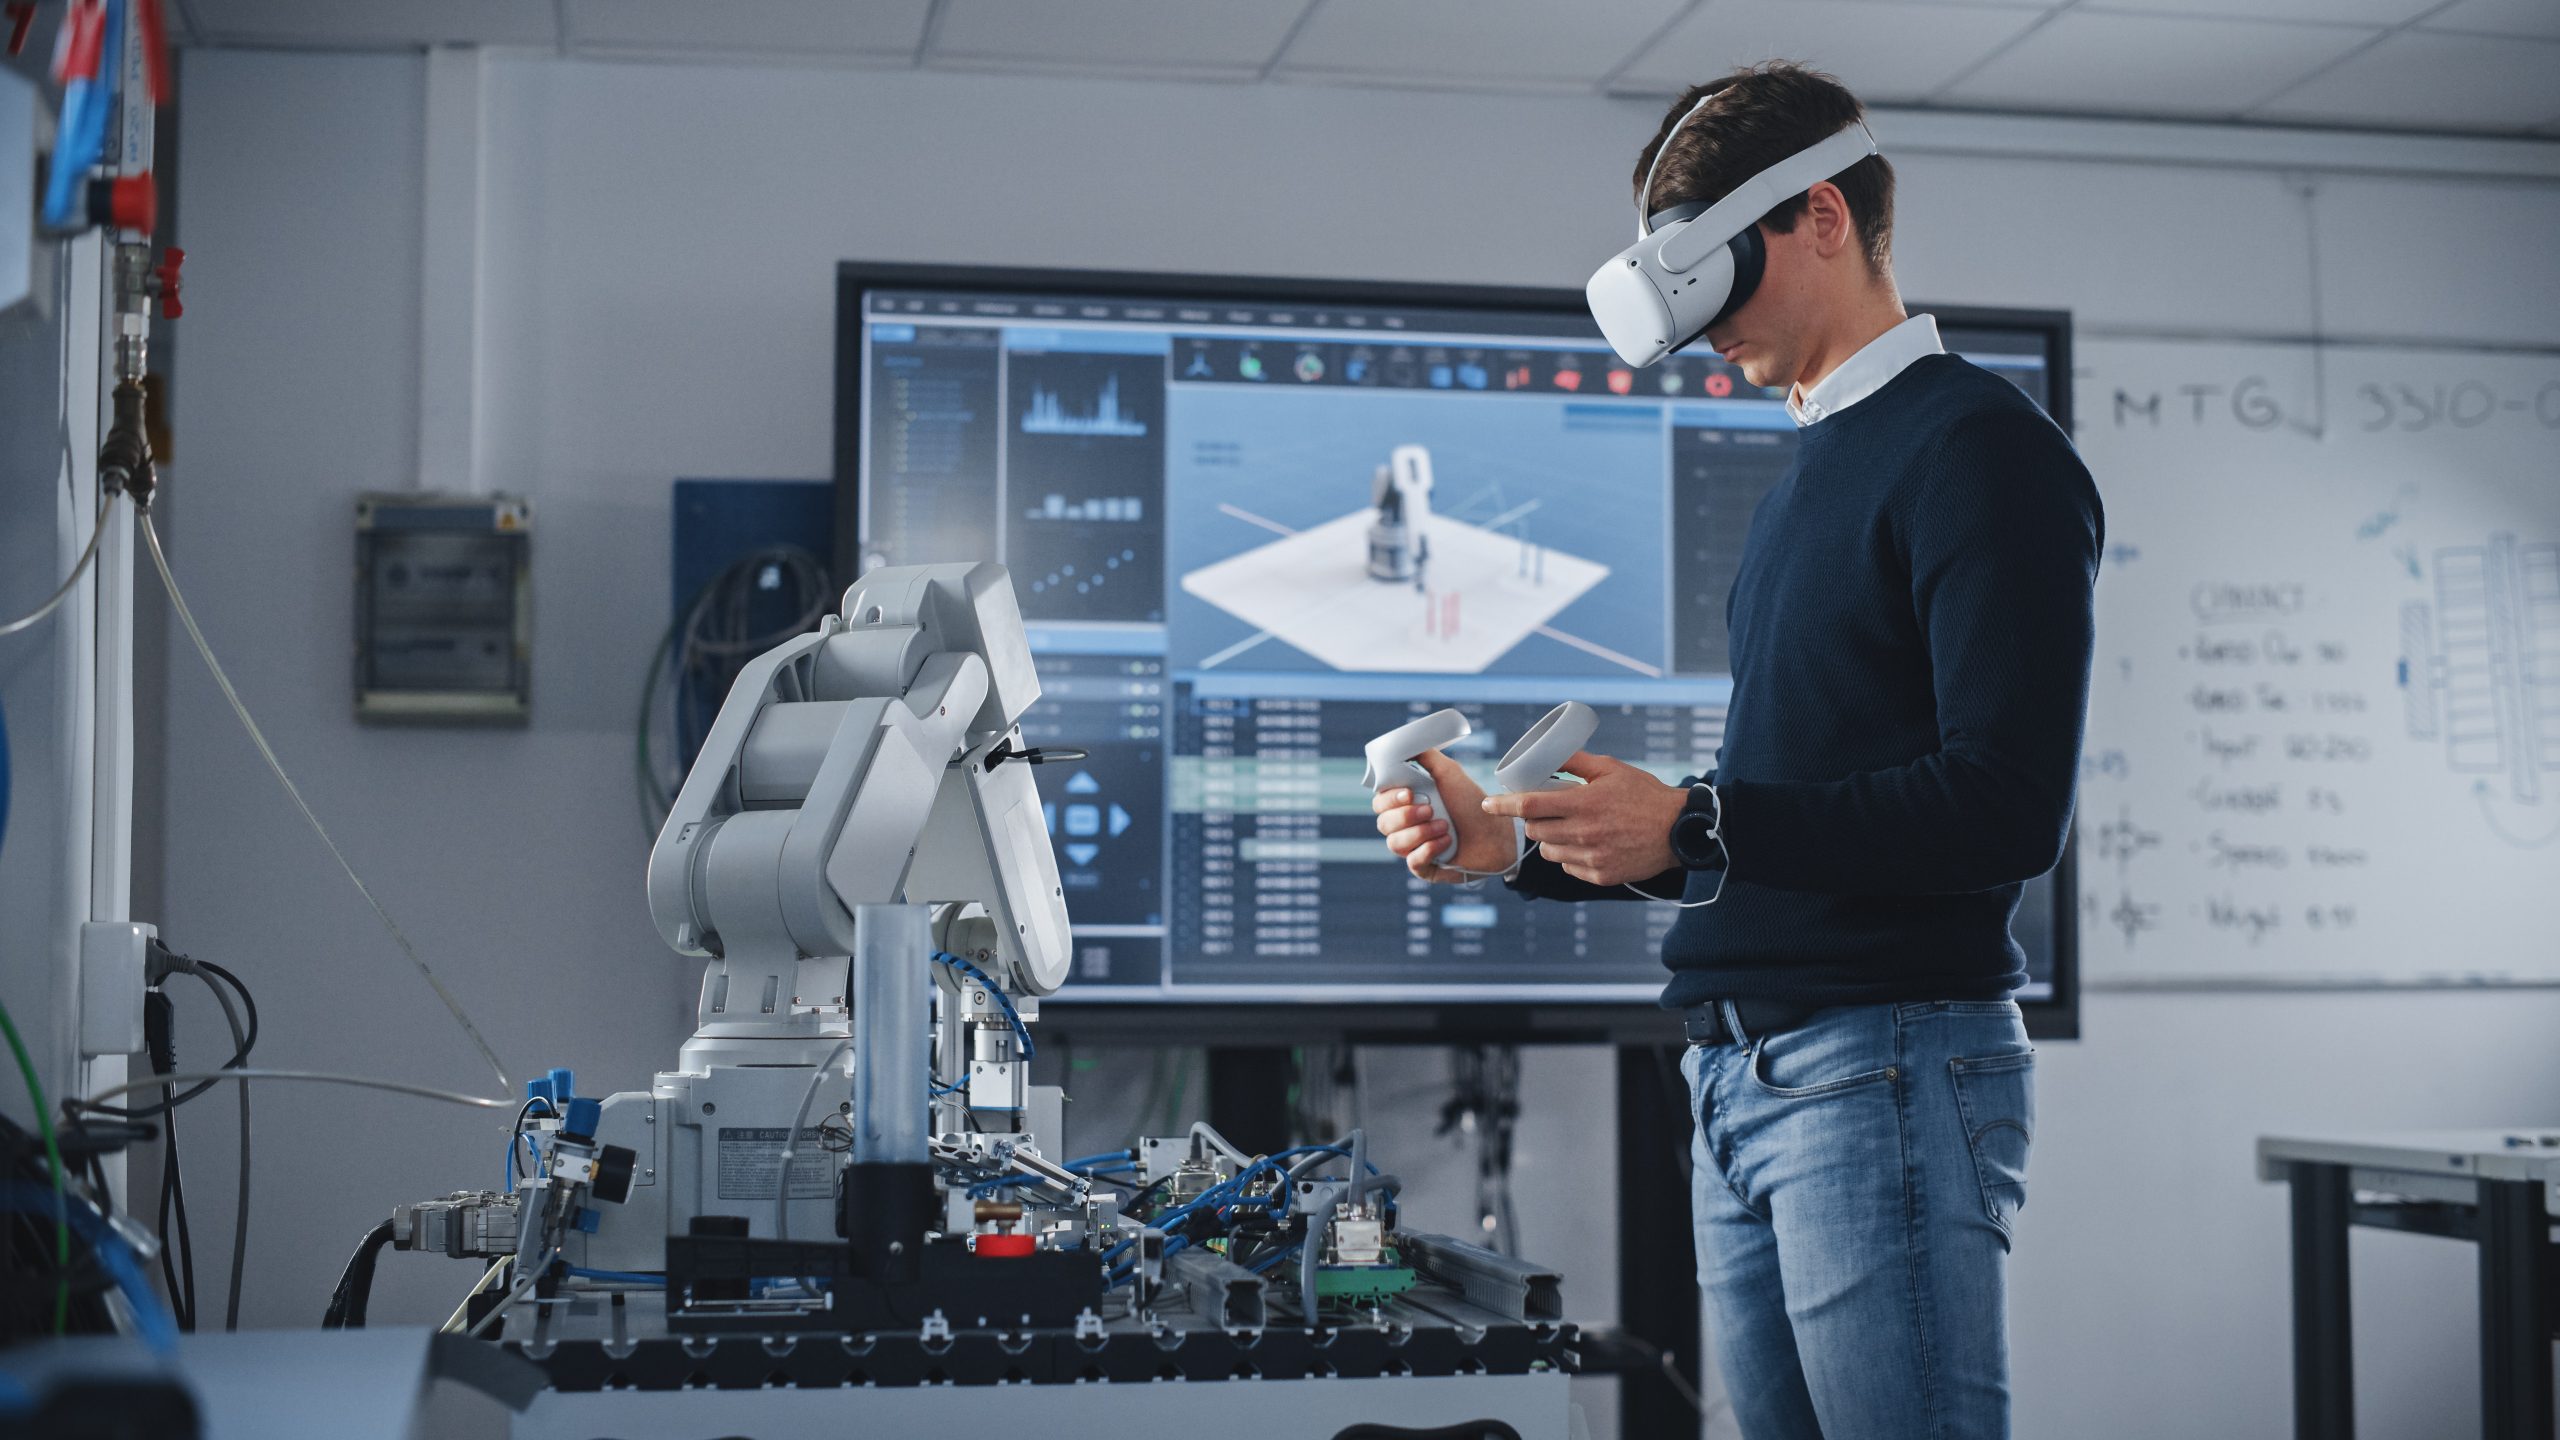 在一所高科技大学的教室里，一名男生戴着 VR 头盔、手持控制器，正专注于自己的机器人研究。